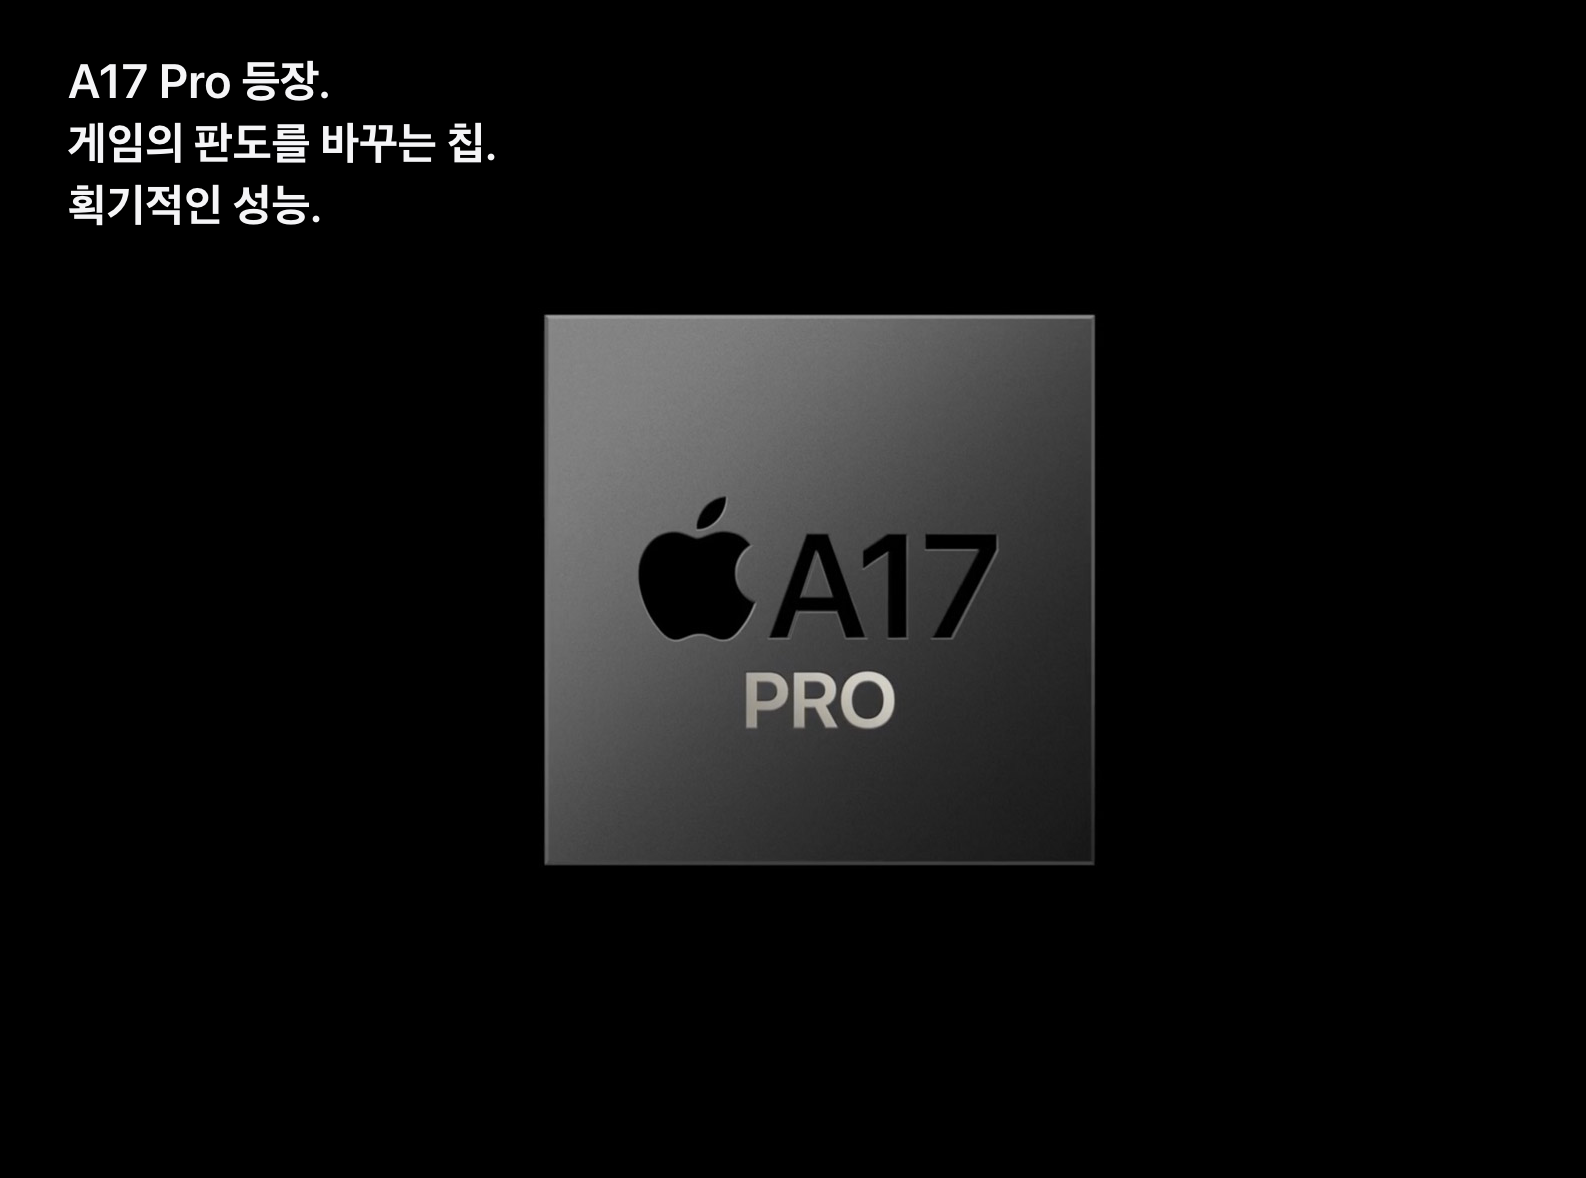 A17 PRO 칩